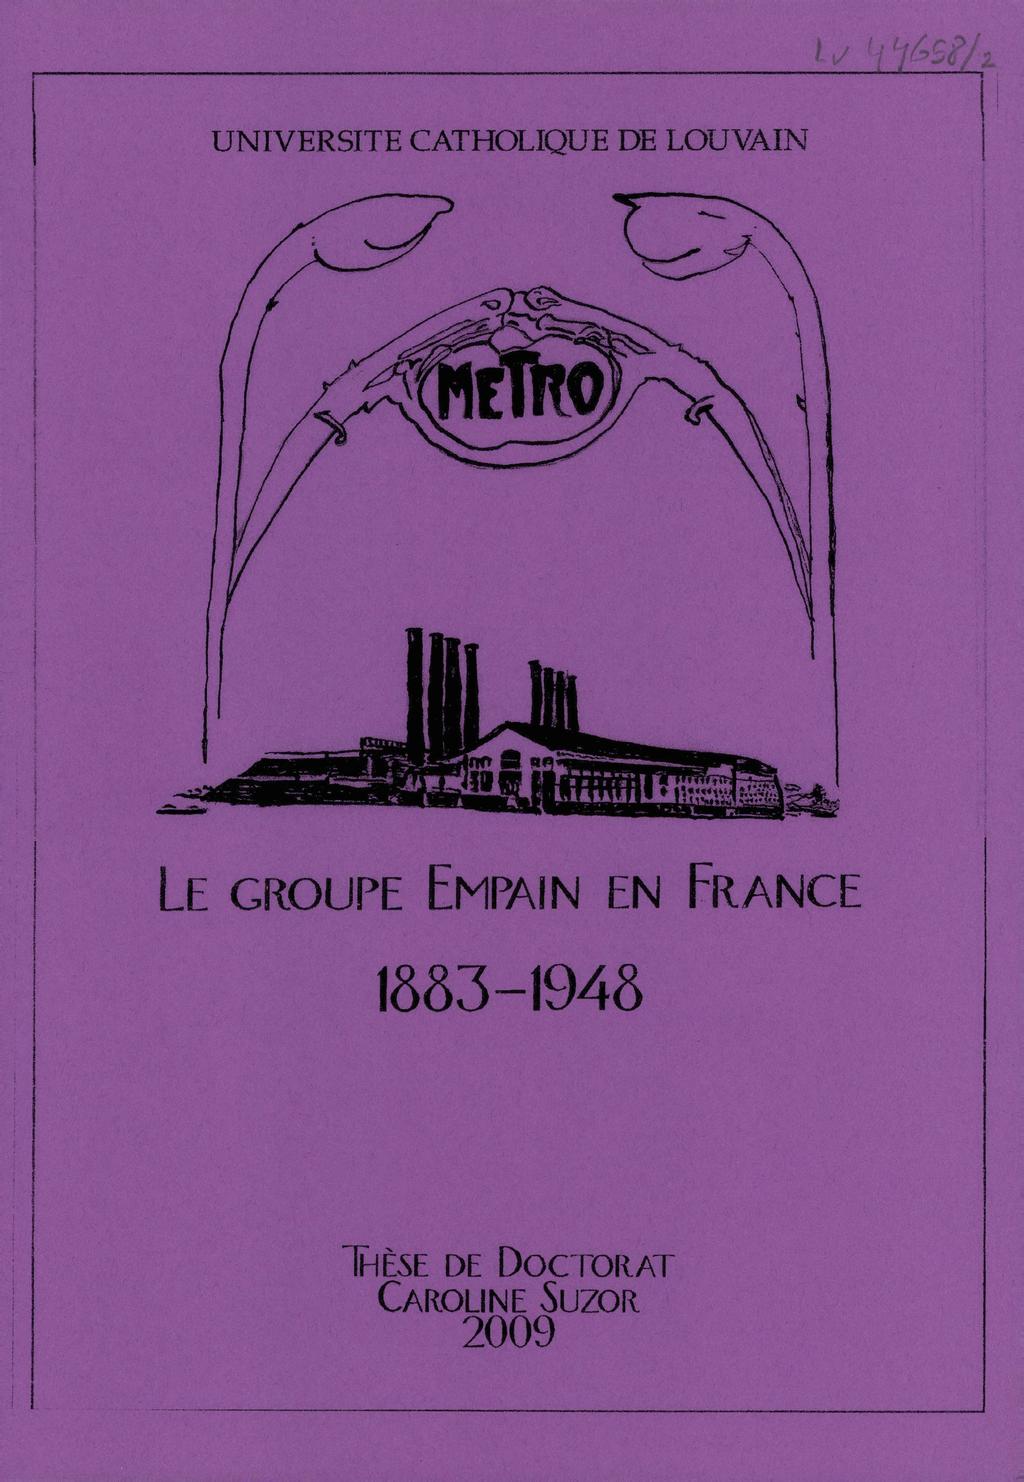 DEP 77 ANNALES DES PONTS et CHAUSSEES dérivation du Loing et du Lunain 1905 